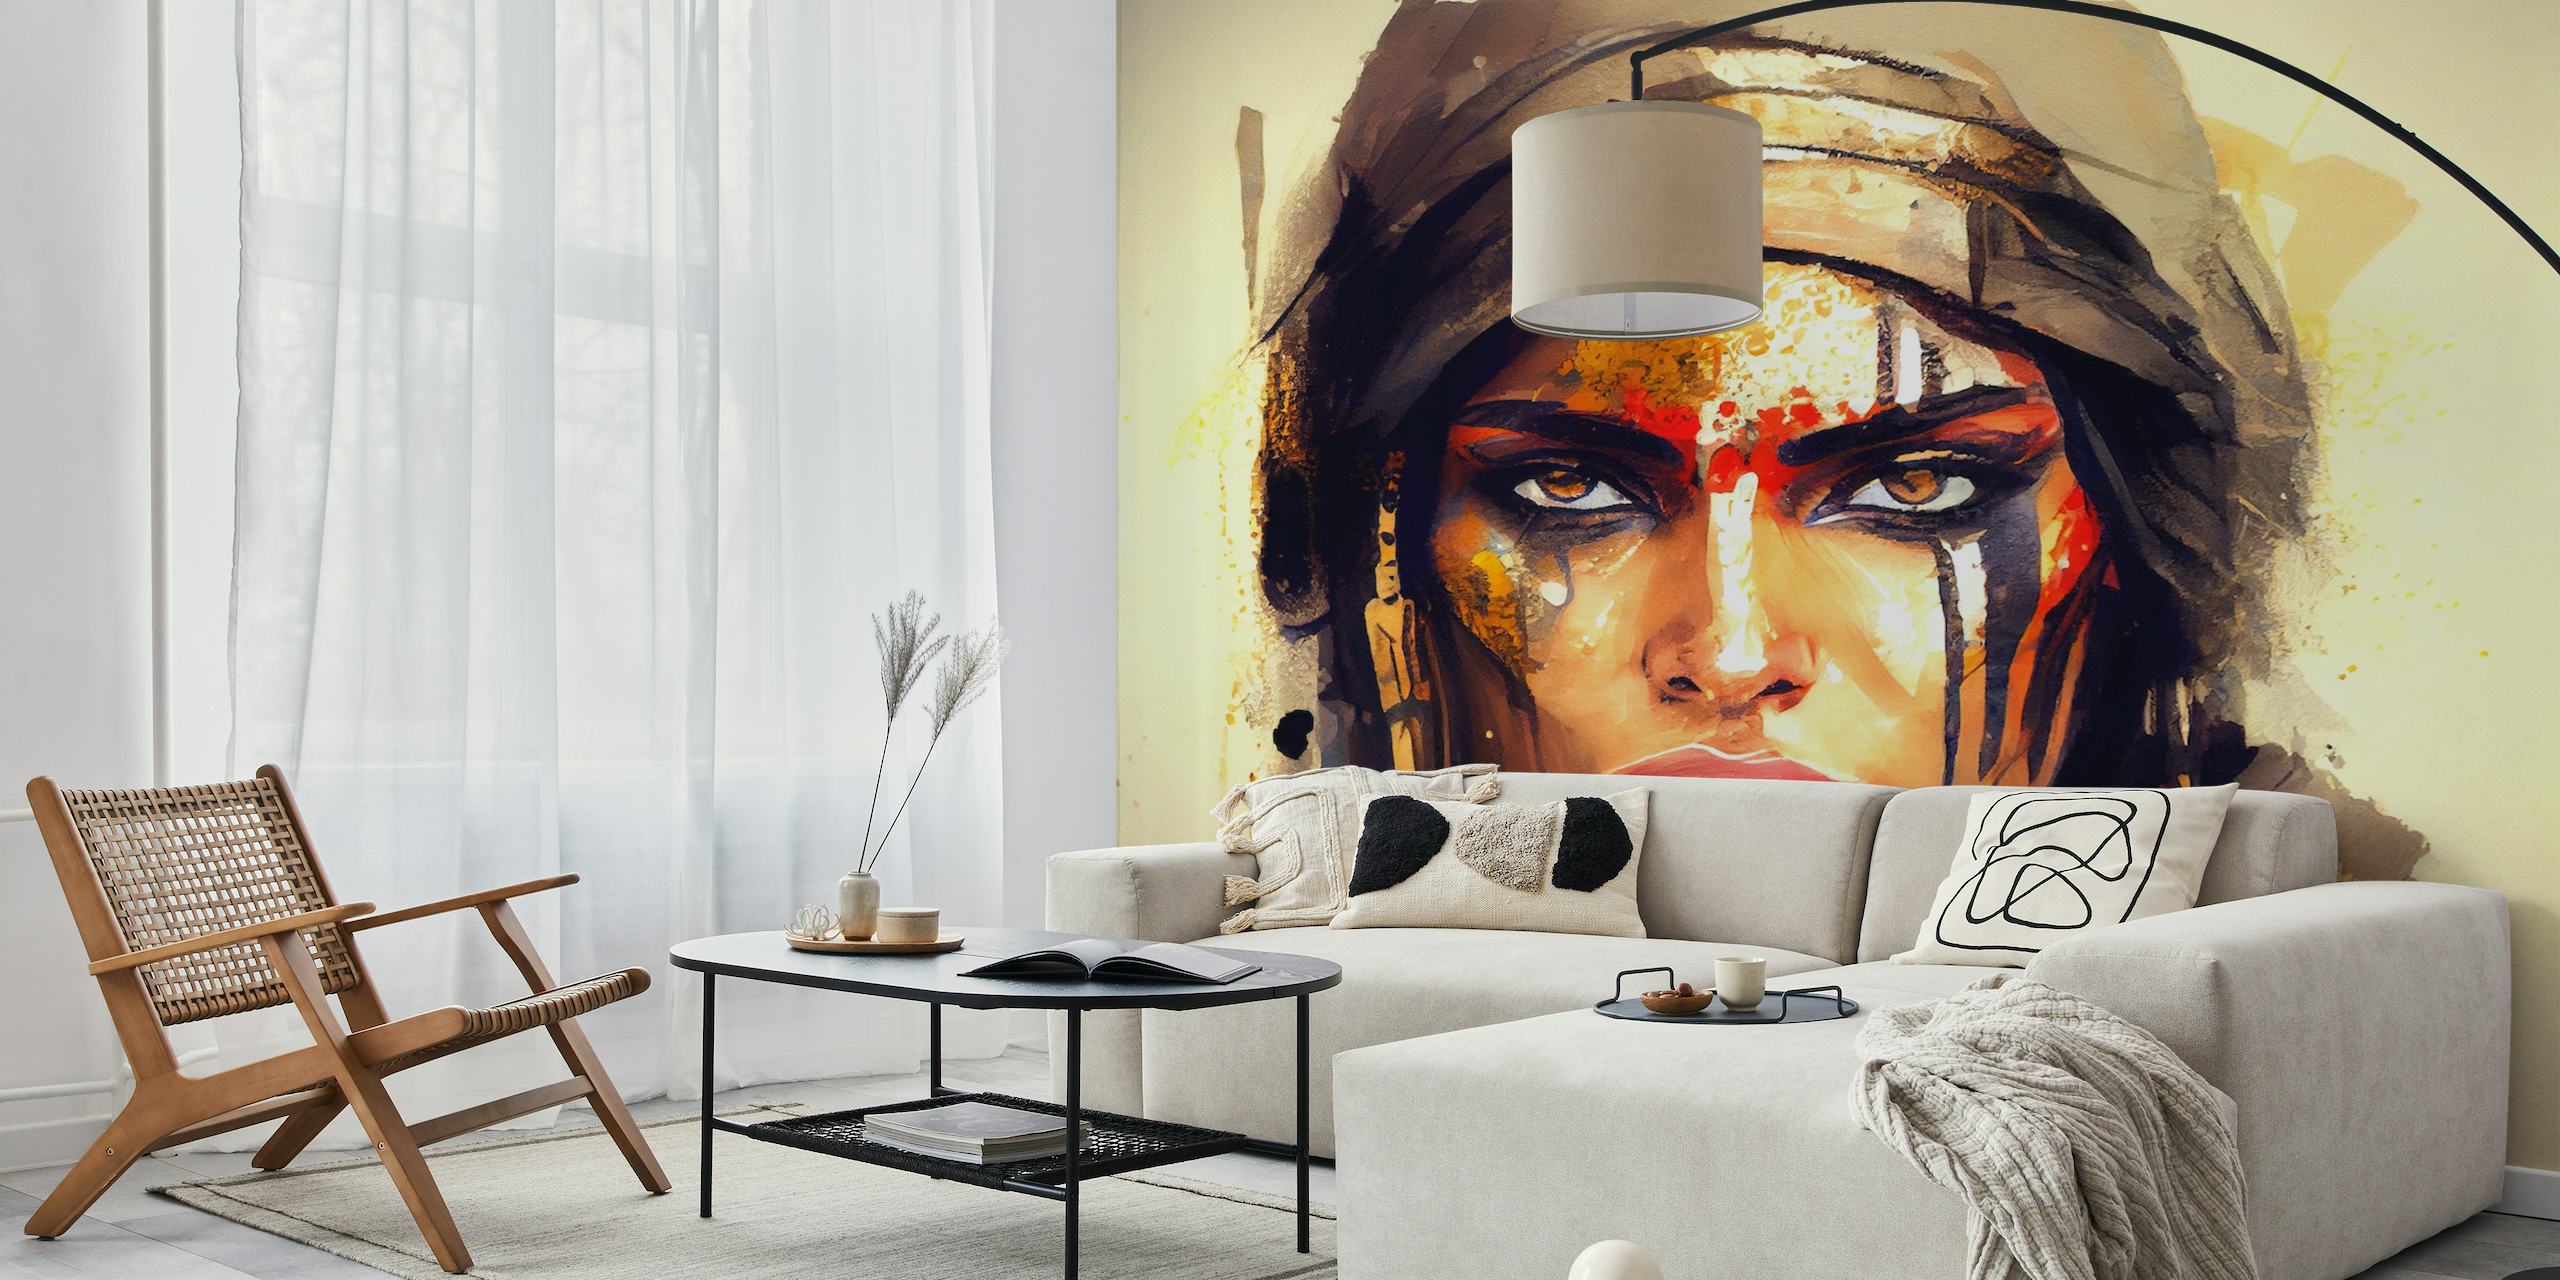 Künstlerische Darstellung einer kraftvollen ägyptischen Kriegerin mit kräftiger Gesichtsbemalung und entschlossenem Gesichtsausdruck.